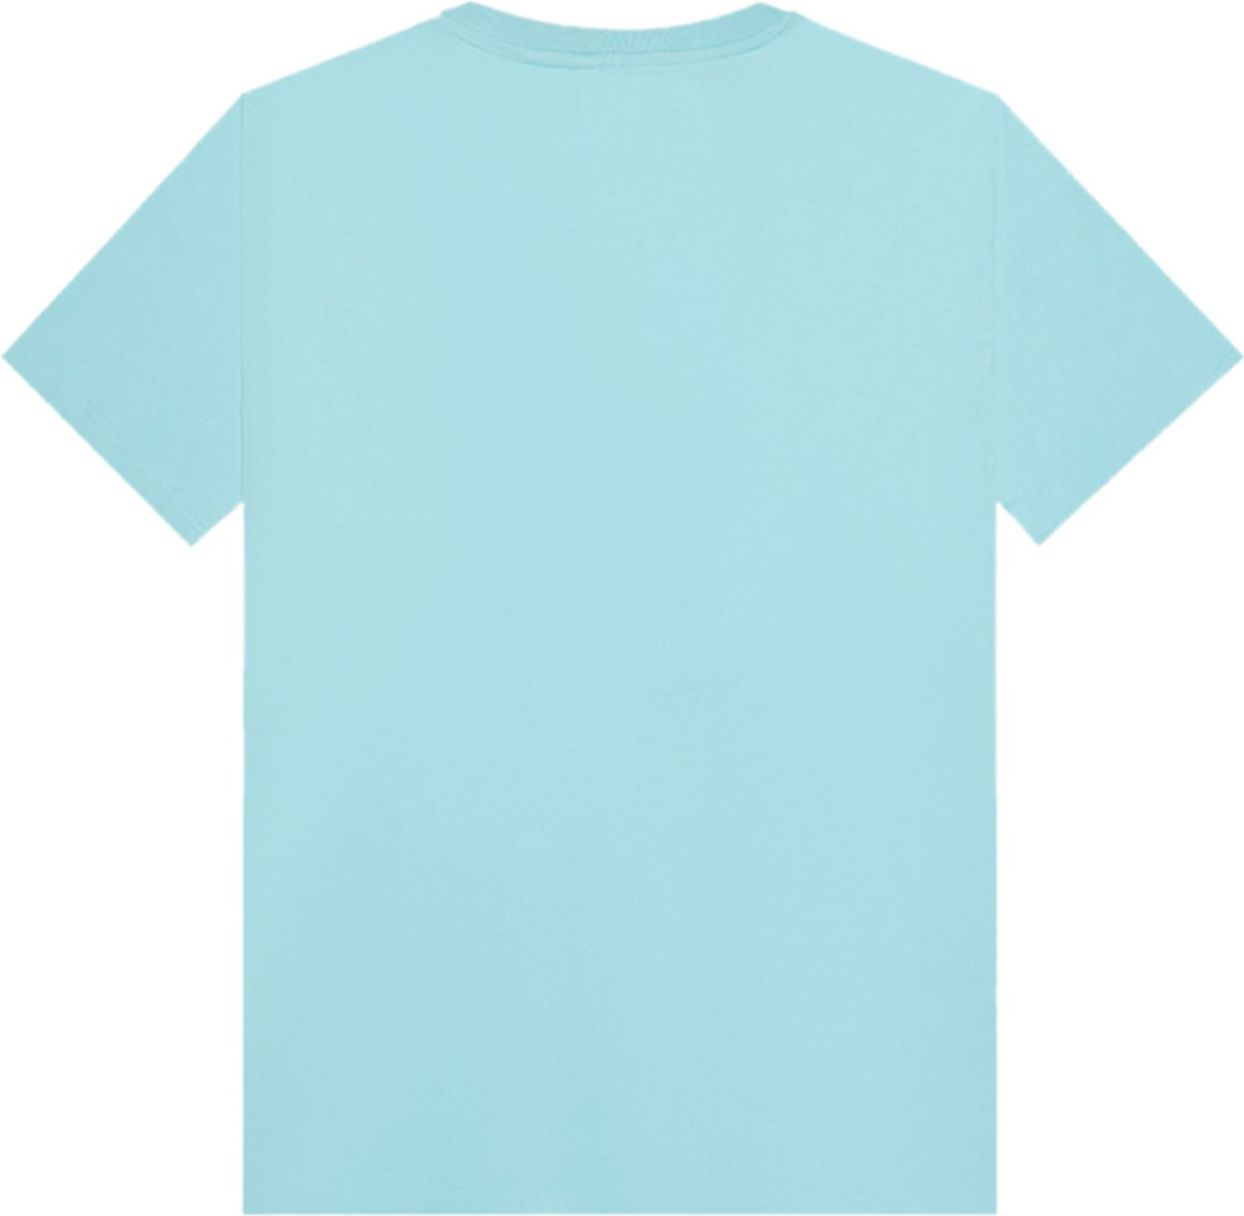 Antony Morato T-shirt blauw Blauw